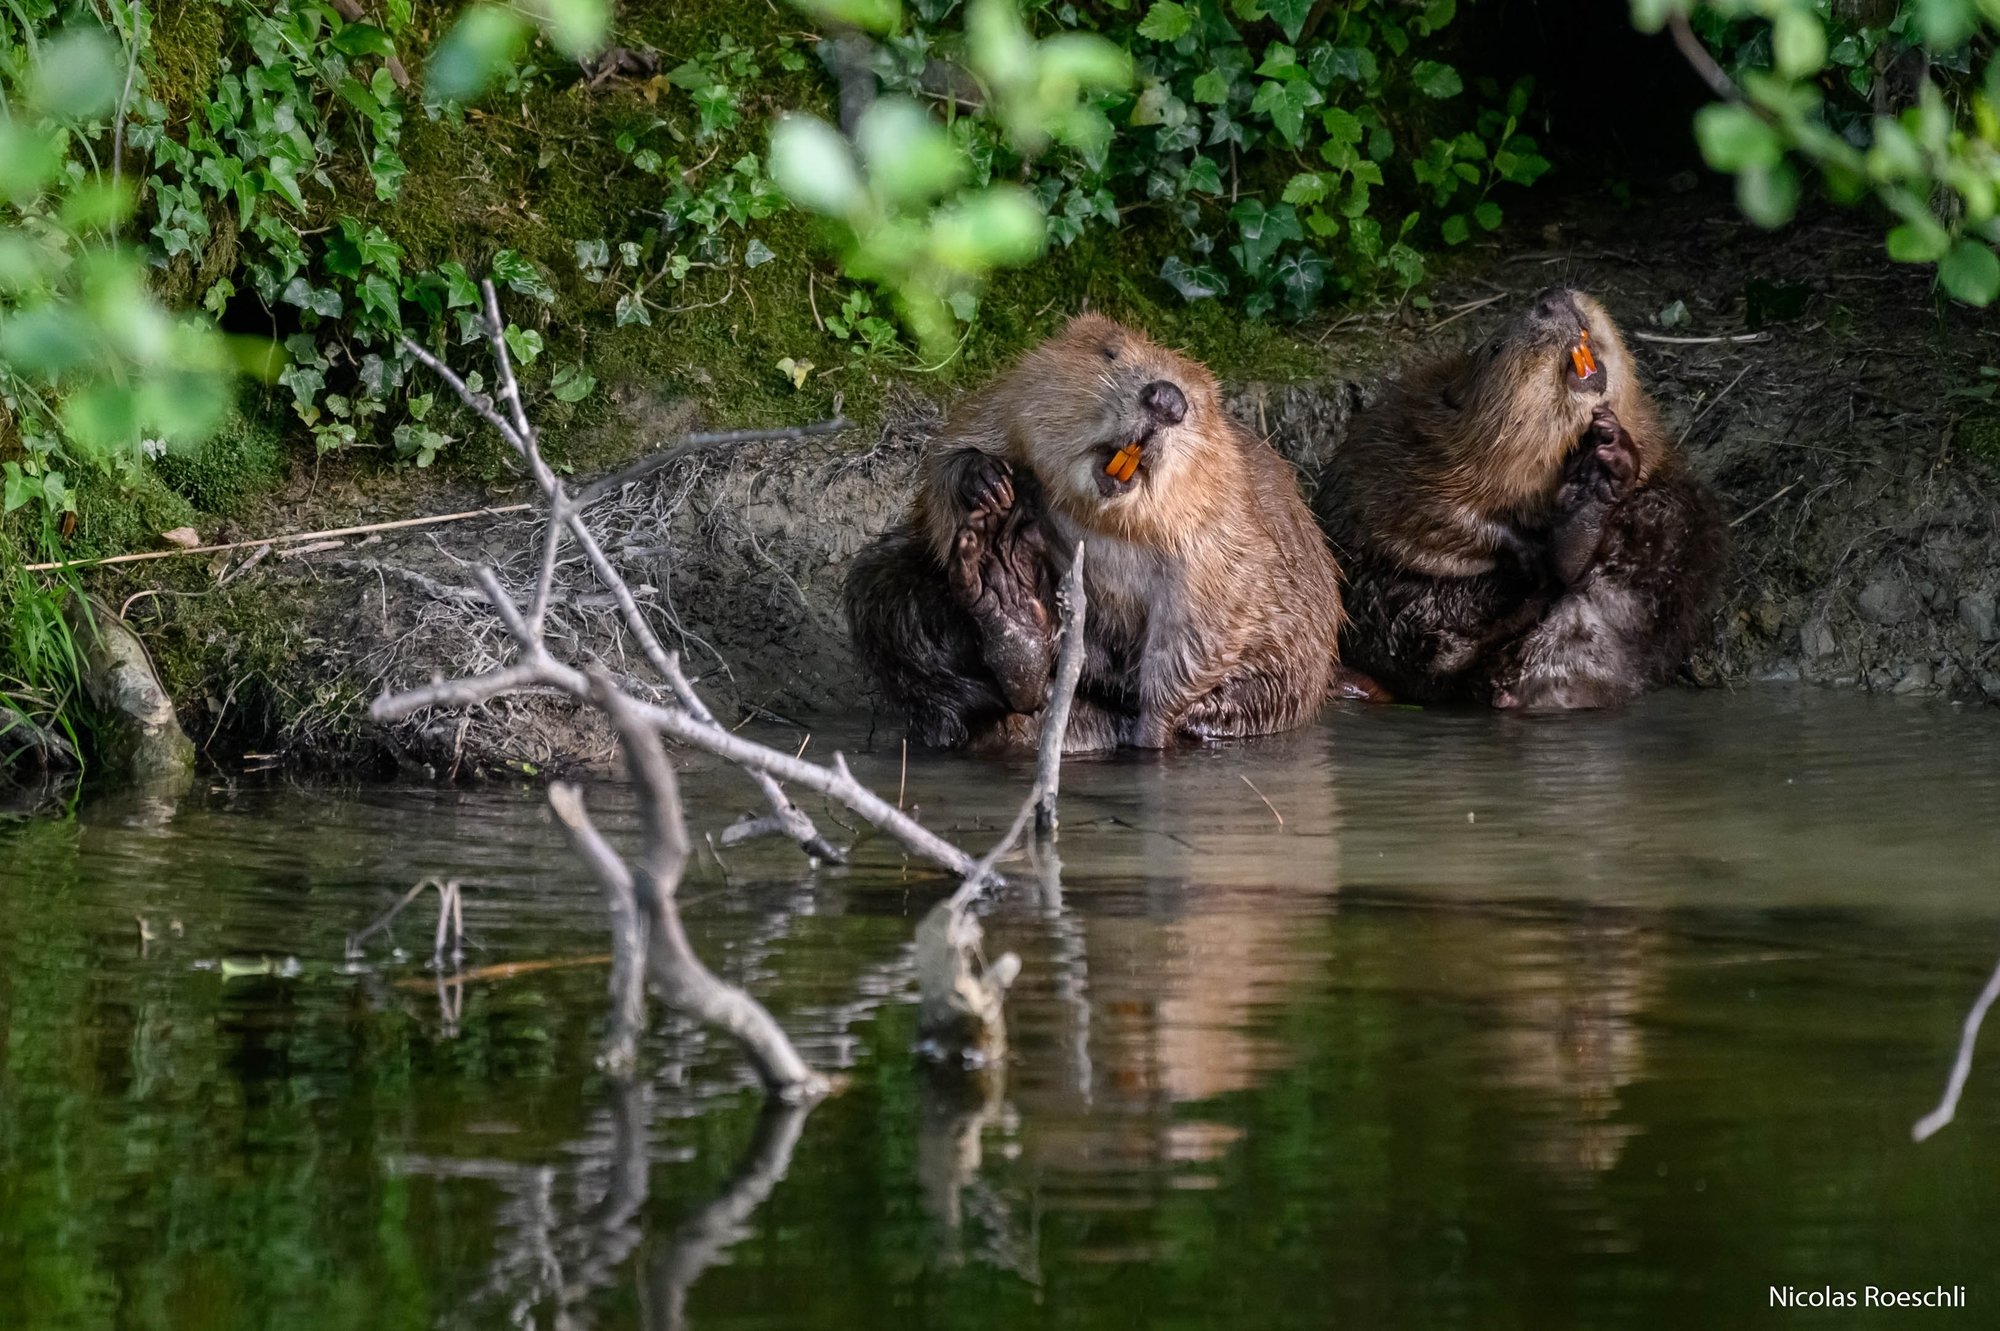 Animaux protégés, les castors pourraient à nouveau être tirés si la révision de la loi sur la chasse était acceptée.